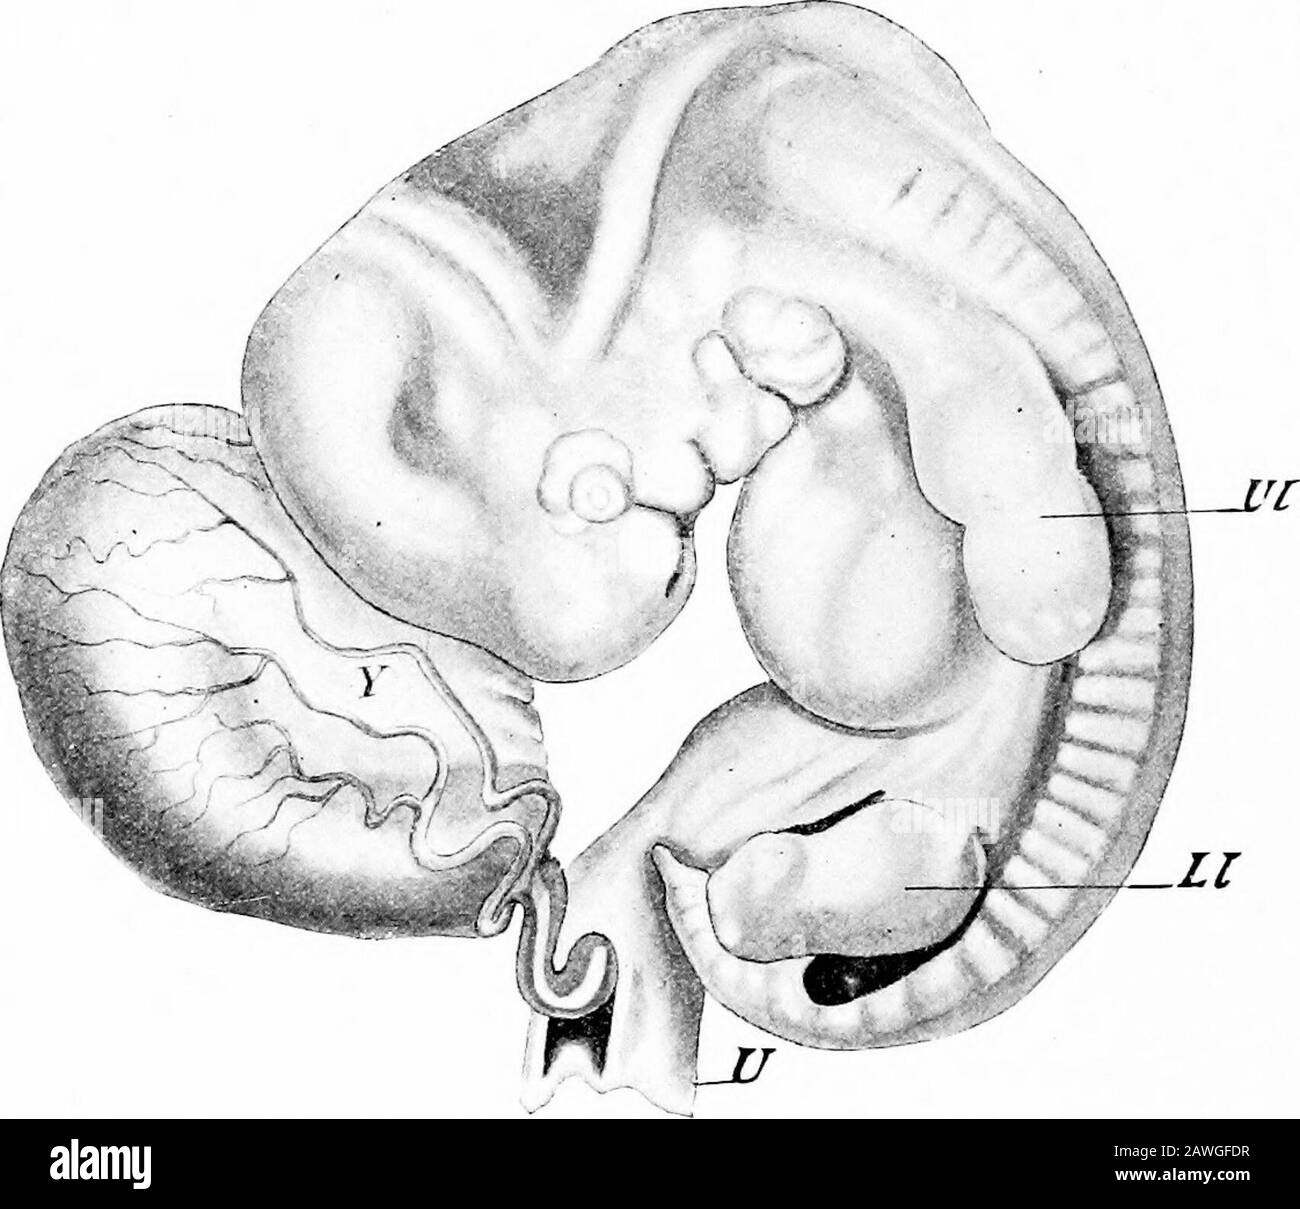 Le développement du corps humain; un manuel d'embryologie humaine . Fig. 46.—Embryon de vingt à vingt-FIVB Jours. A m, Amnion ; LL, membre inférieur ; UA, artère ombilicale ; Uc, cordon ombilical ; UL, membre supérieur ; Ys, jaune-sac.— (Coste.) 96 LE DÉVELOPPEMENT DU CORPS HUMAIN. Les petites élévations des côtés du corps, l'un des sites presque oppo de la courbure du cou et l'autre opposé de la courbure sacrale, sont les premières indications des membres (Ul et LI); et le theeyeball et la vésicule d'oreille (au), qui étaient présents de manière réfléchie pas très évidente dans les étapes précédentes, sont maintenant des vues de surface de visiblein. À l'étape suivante, en tant que tel Banque D'Images